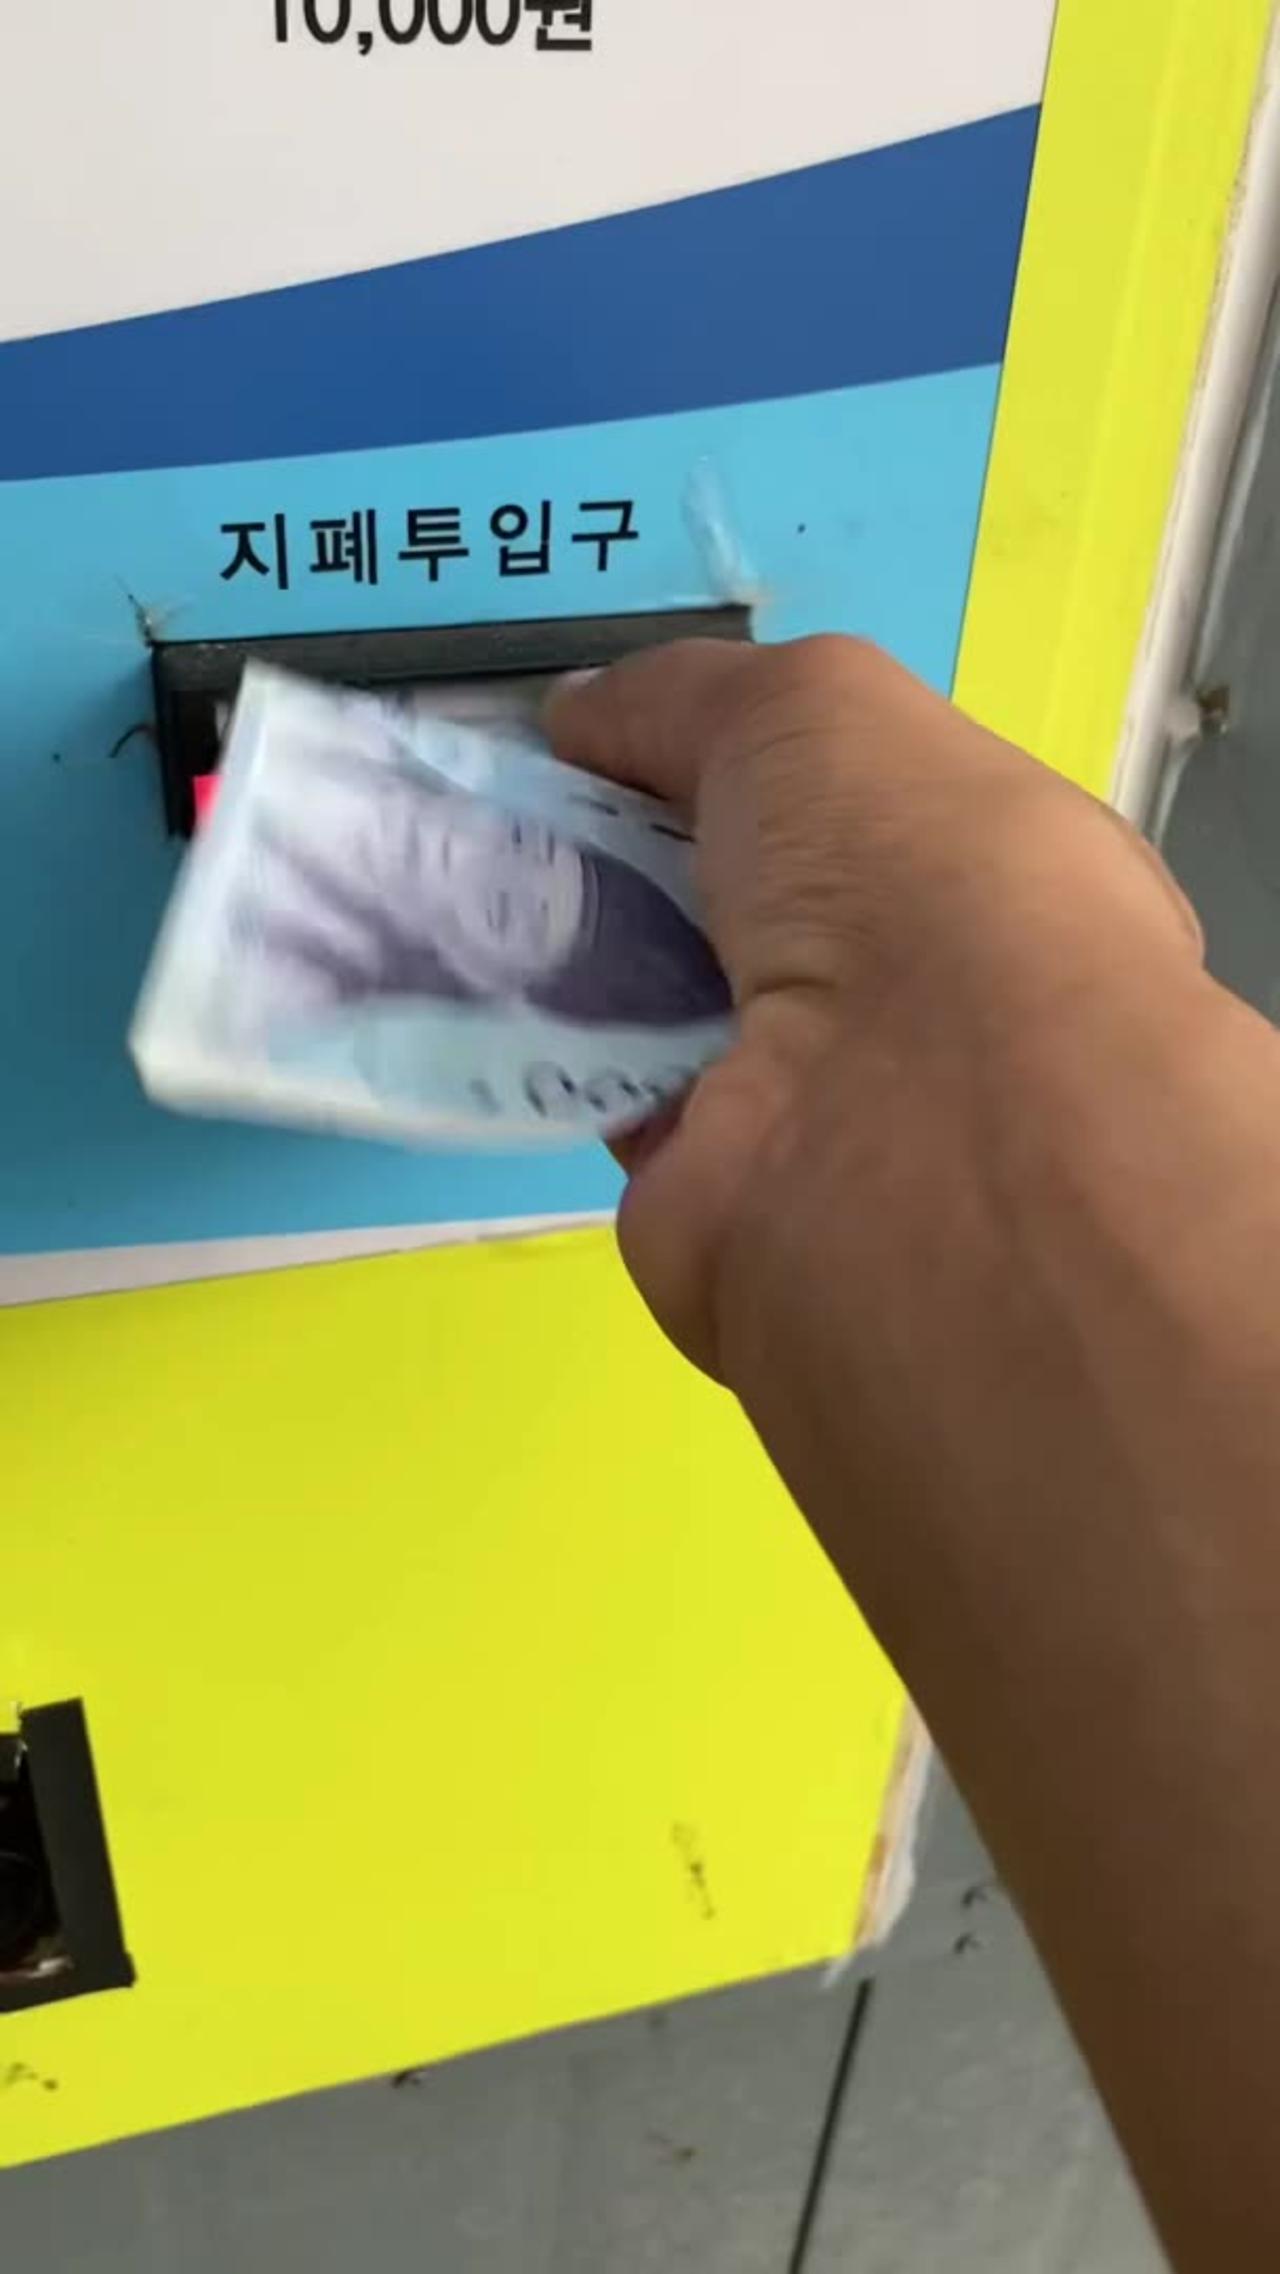 Korean money changing